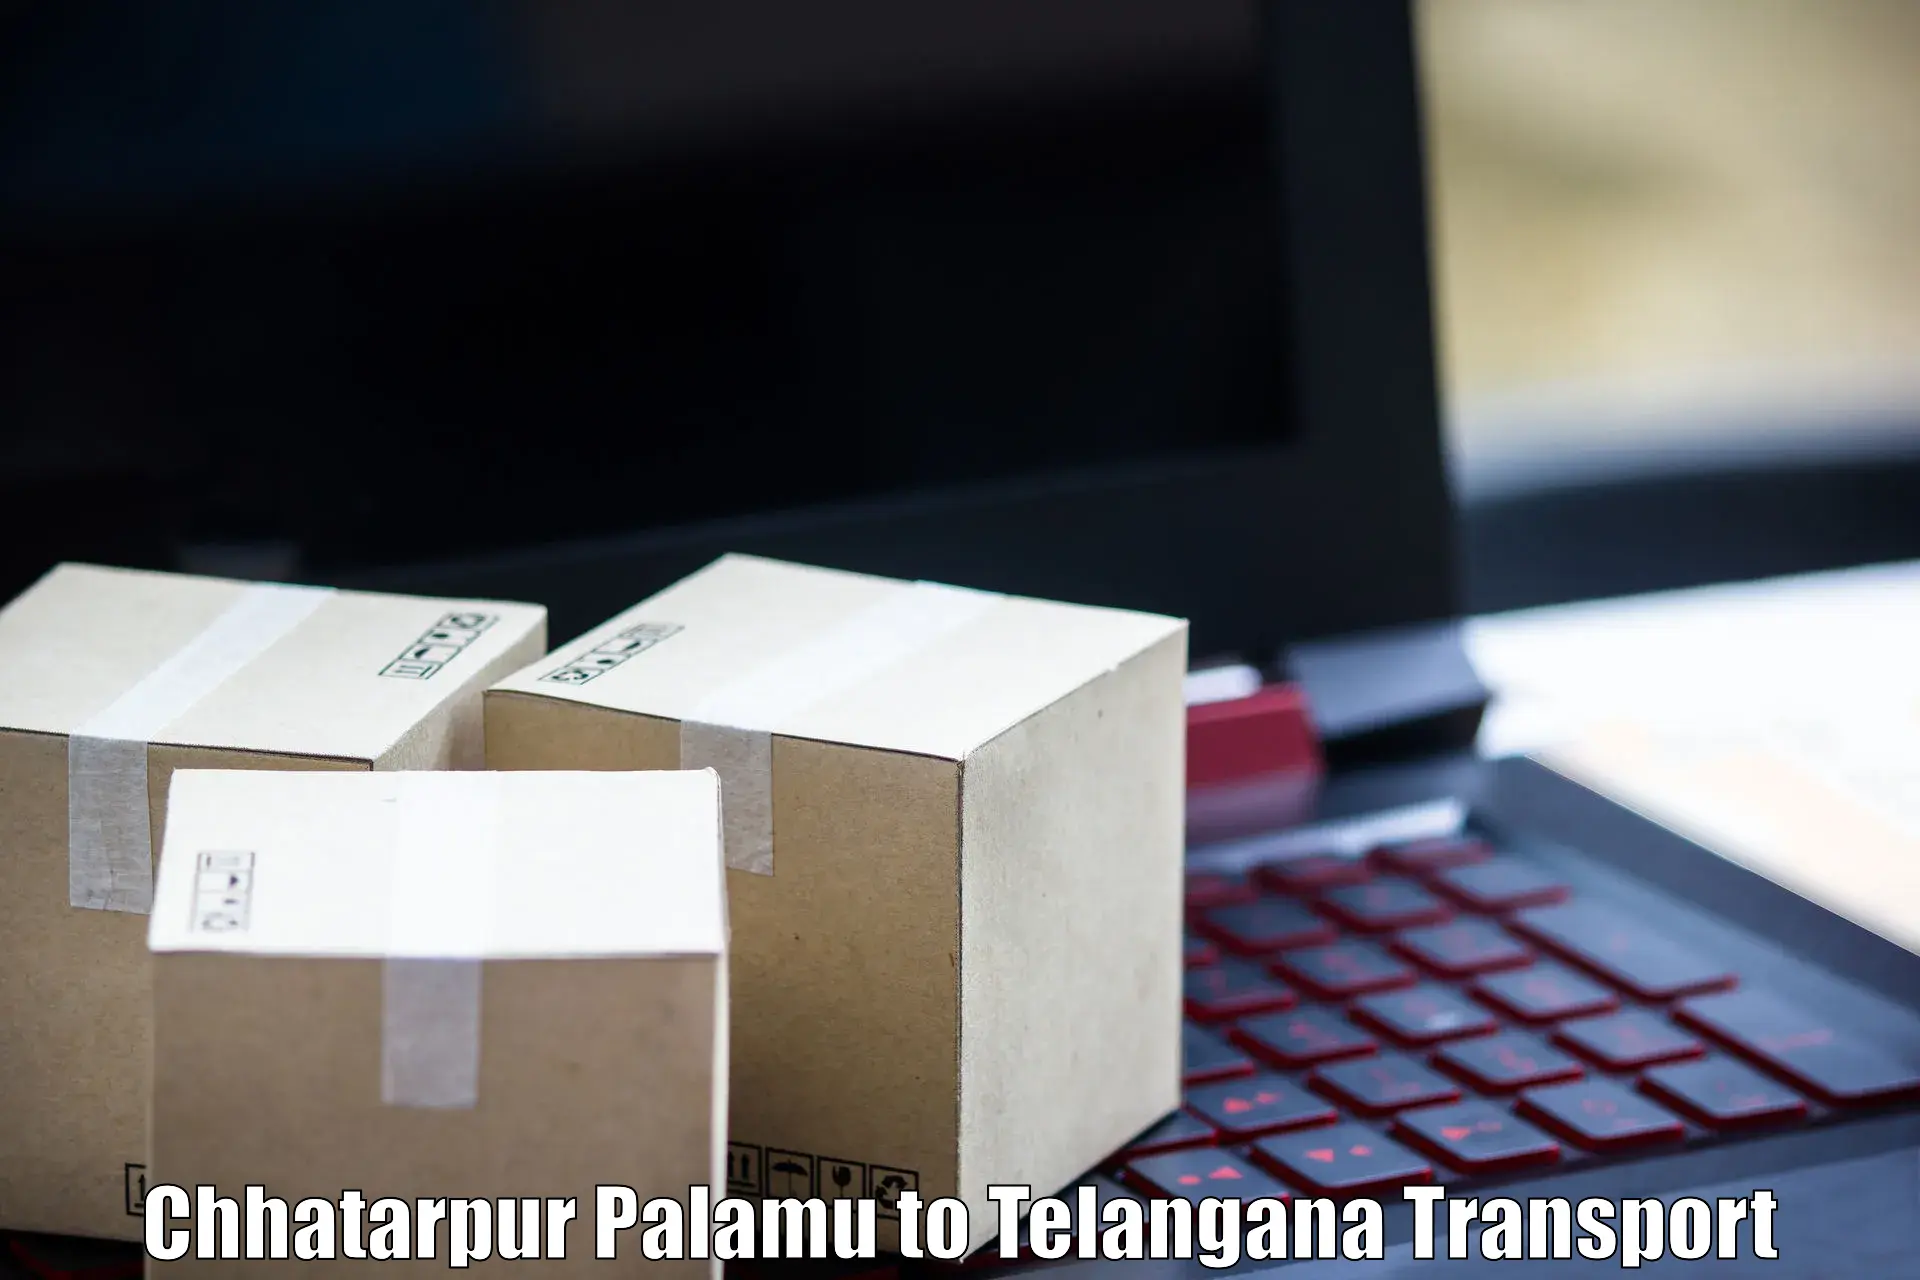 Shipping partner Chhatarpur Palamu to Nereducharla